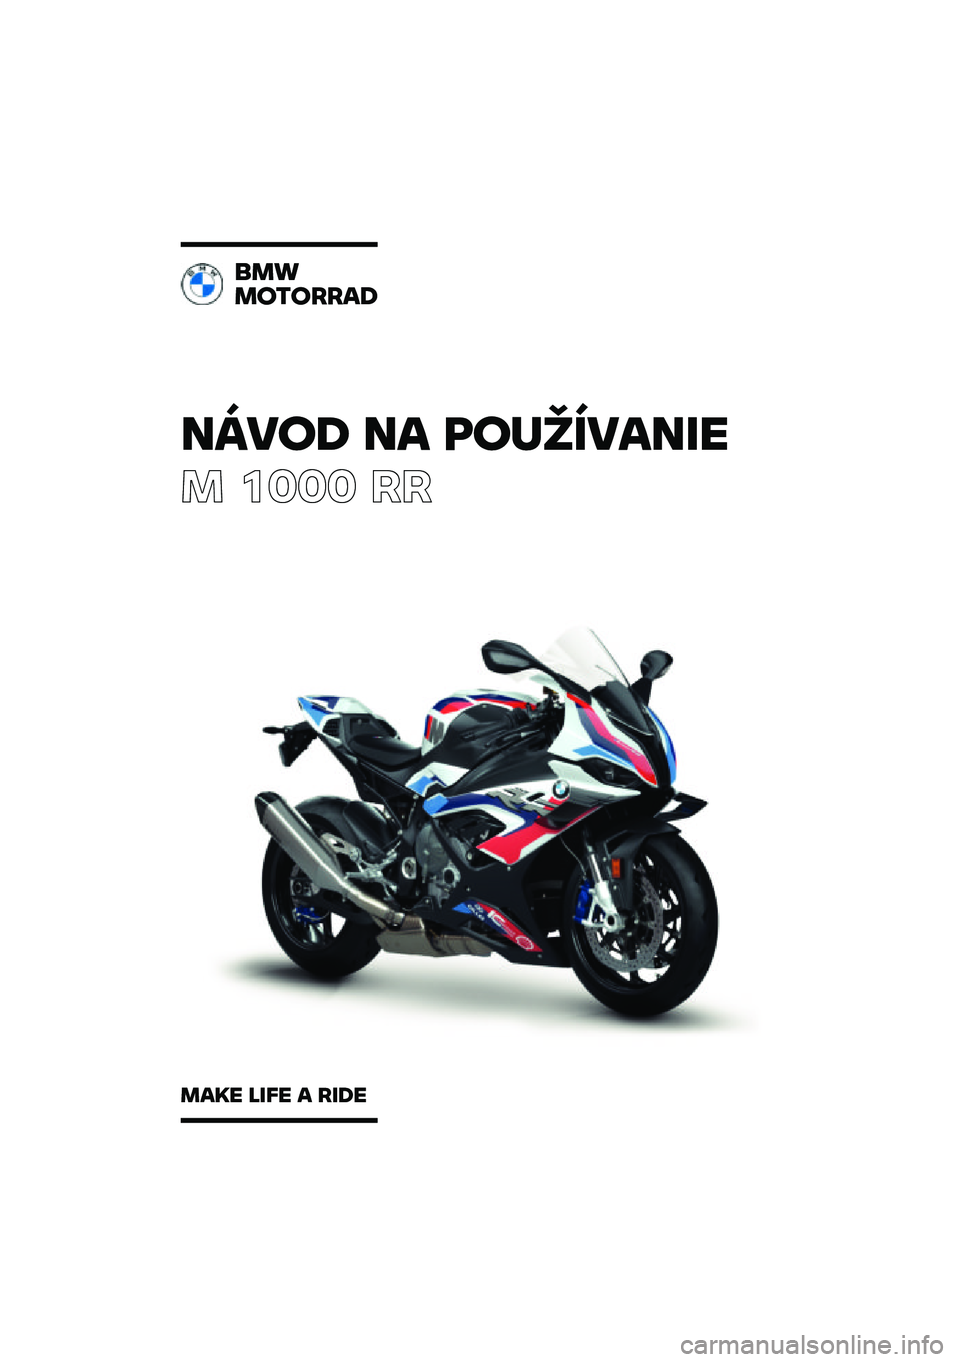 BMW MOTORRAD M 1000 RR 2021  Návod na používanie (in Slovak) �����\b �� �	��
�������
� ���� ��
���
��������\b
���� ���� � ���\b� 